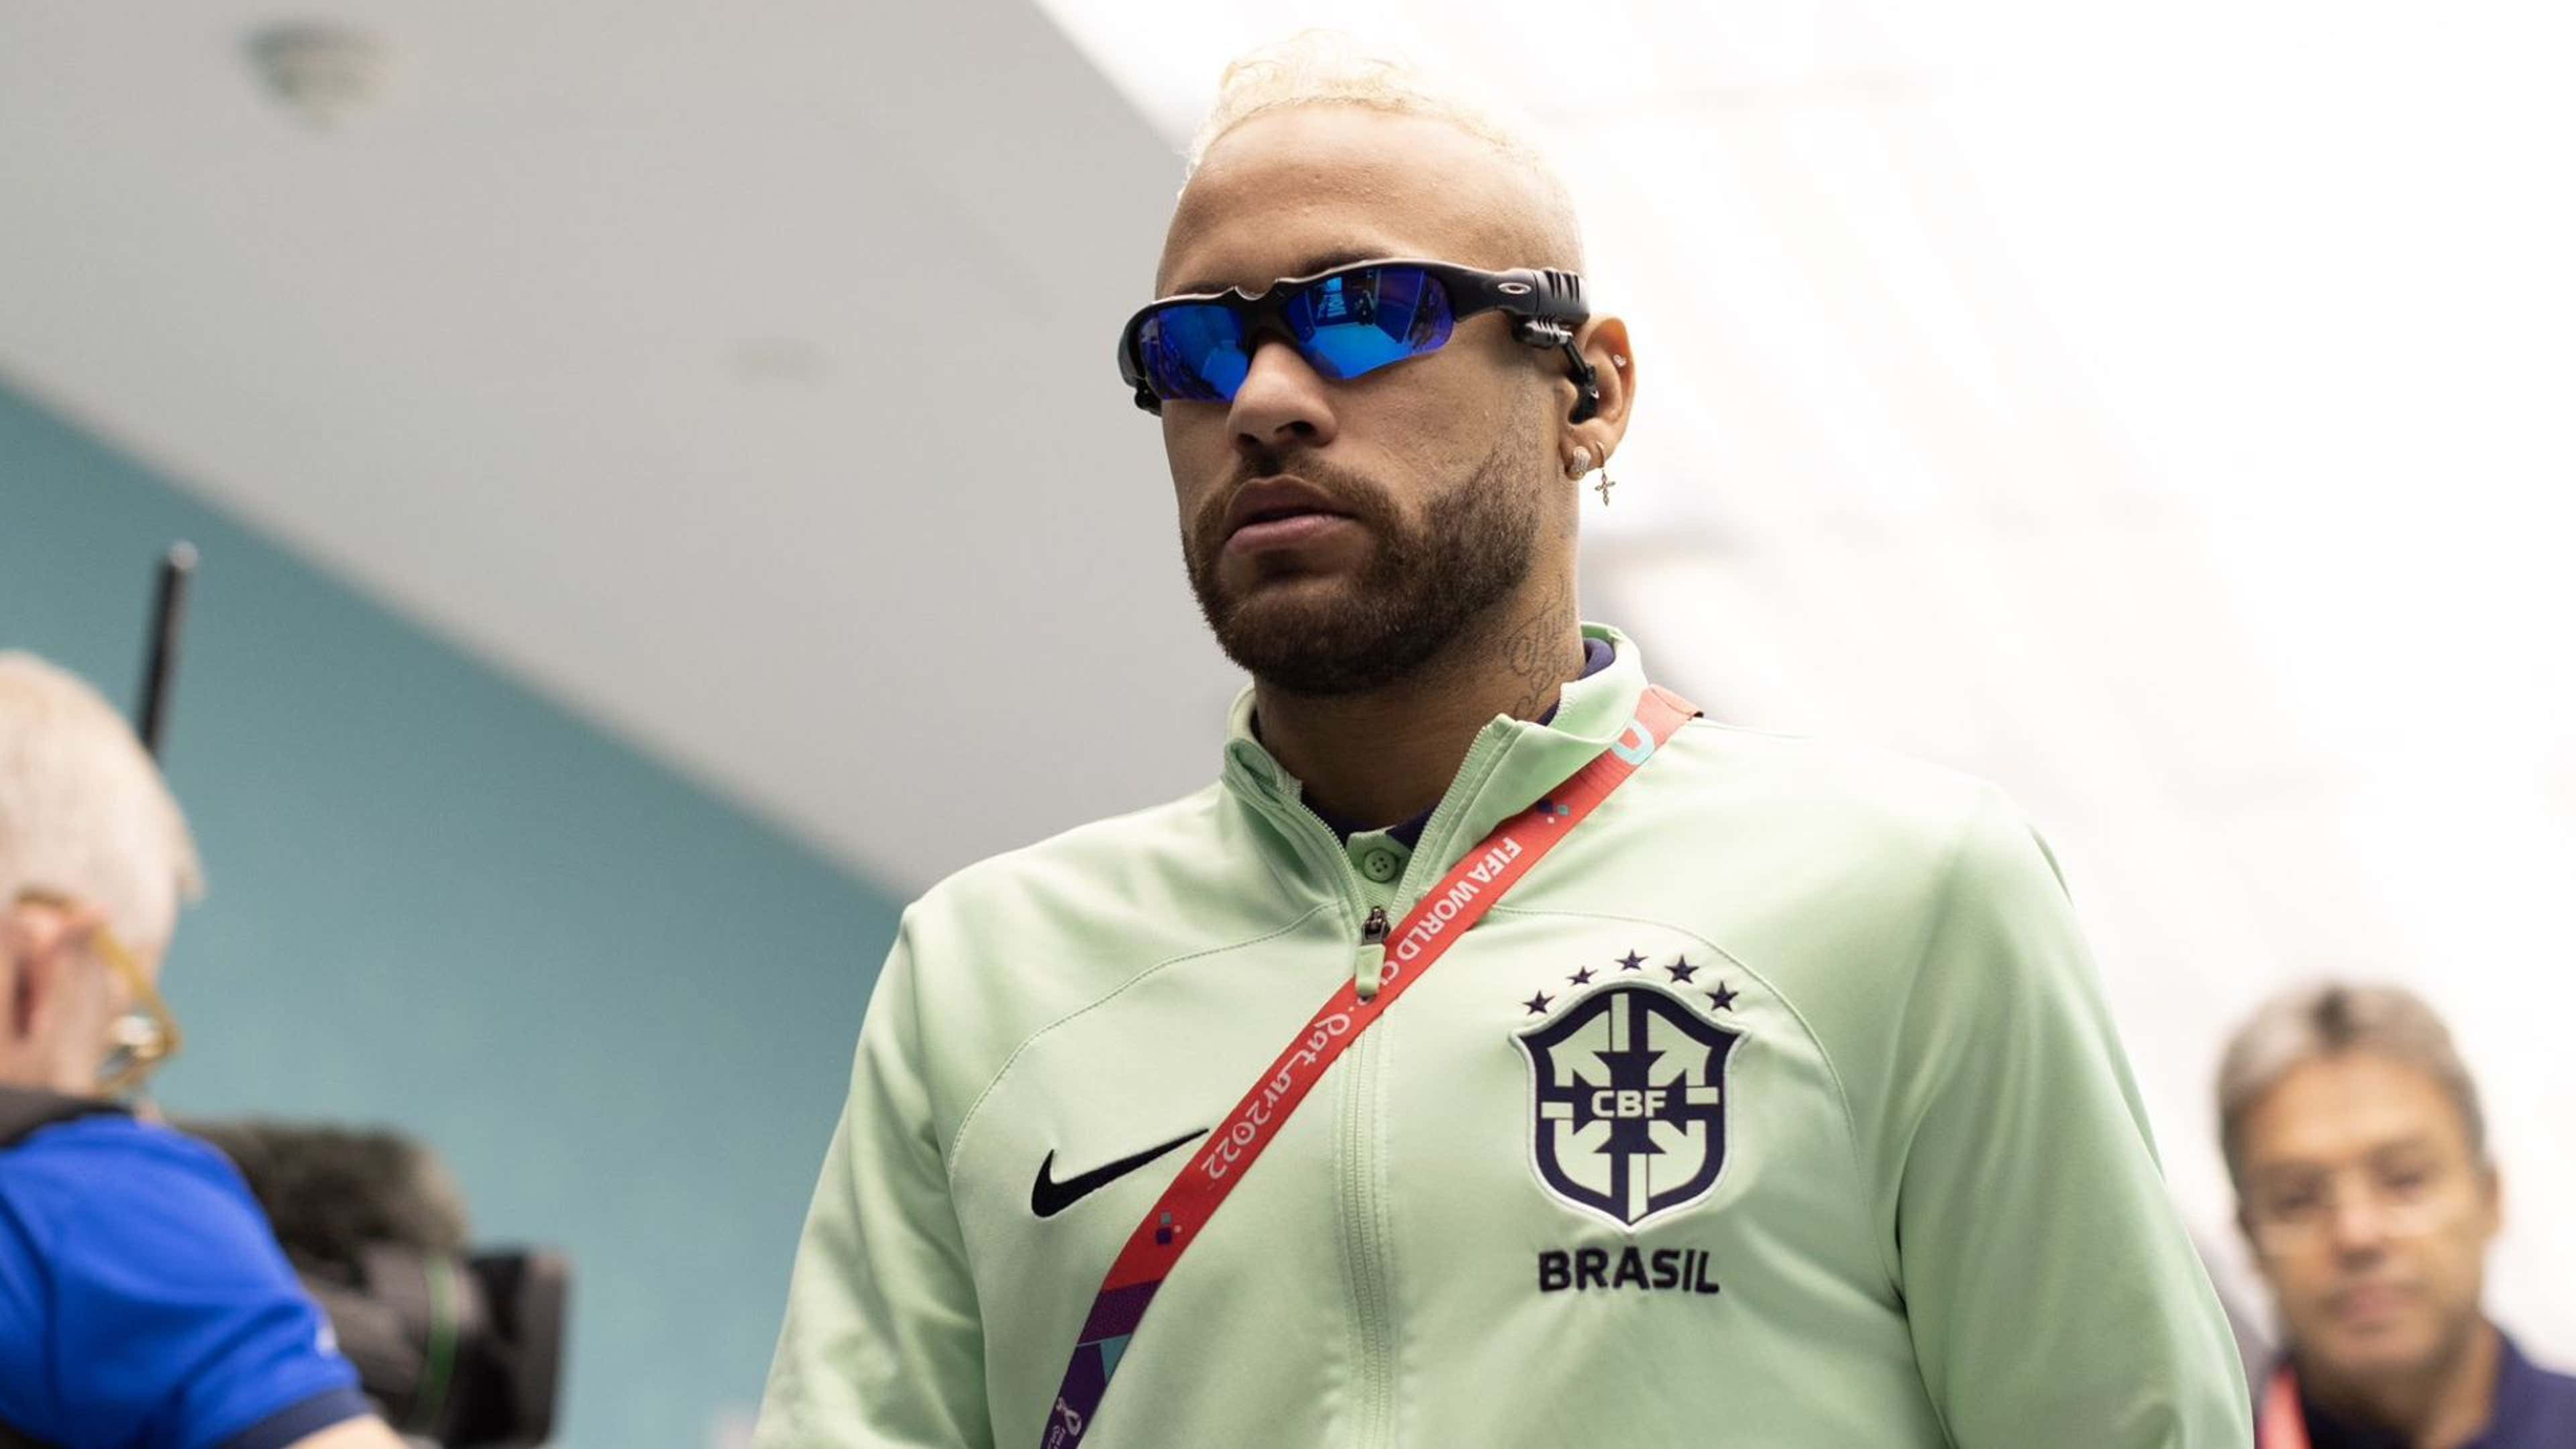 O que é Juliet, os óculos escuros que Neymar usa? Quanto custa o acessório?